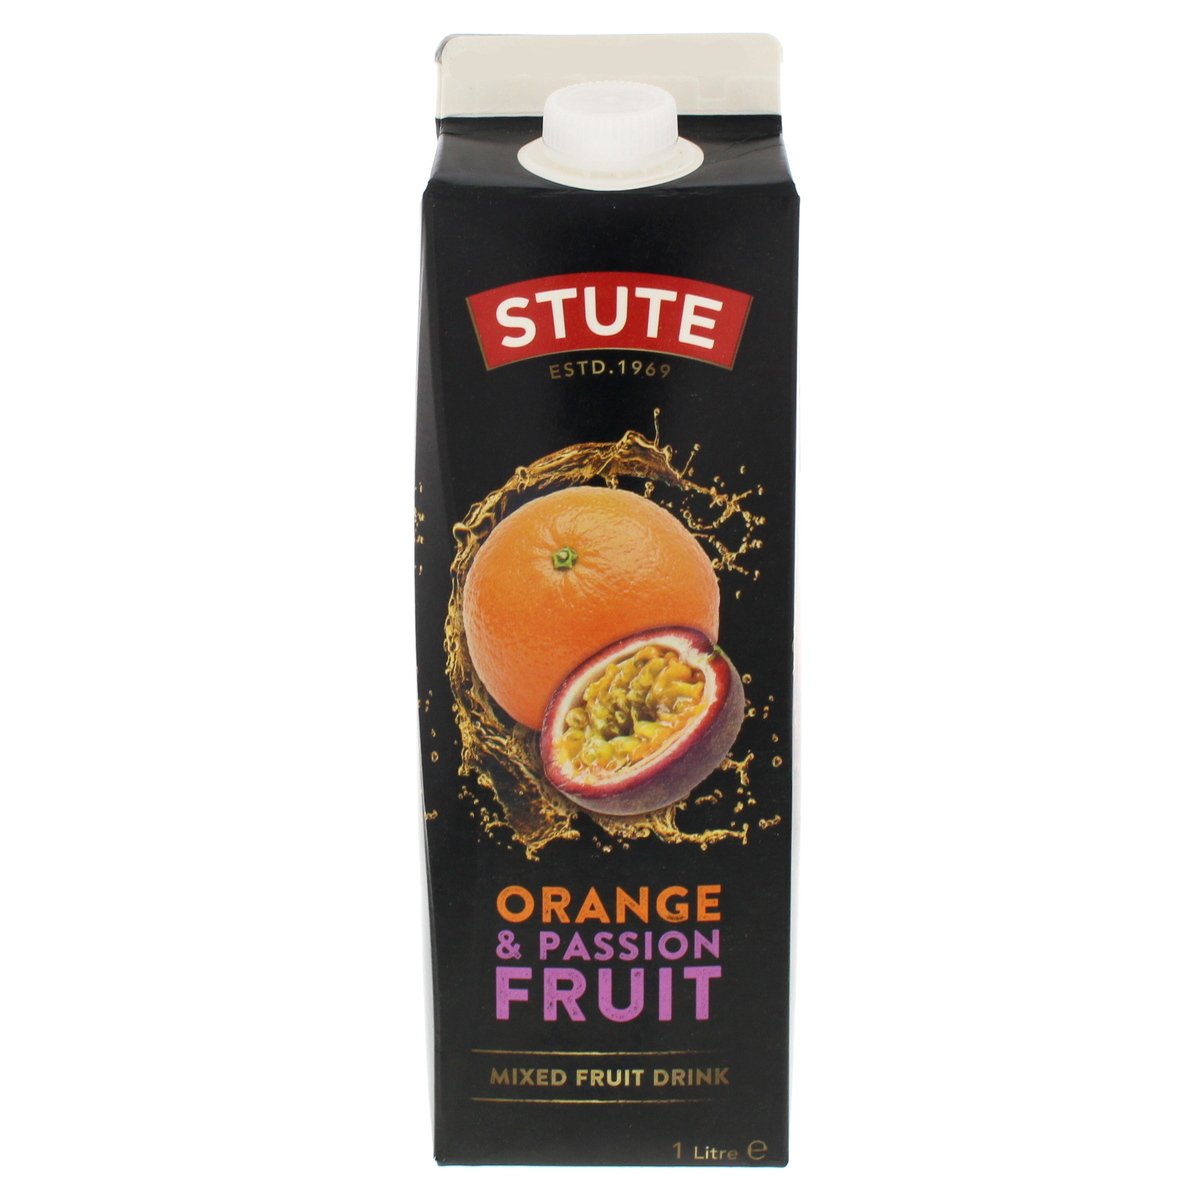 Stute Orange & Passionfruit Mixed Fruit Drink 1 Litre